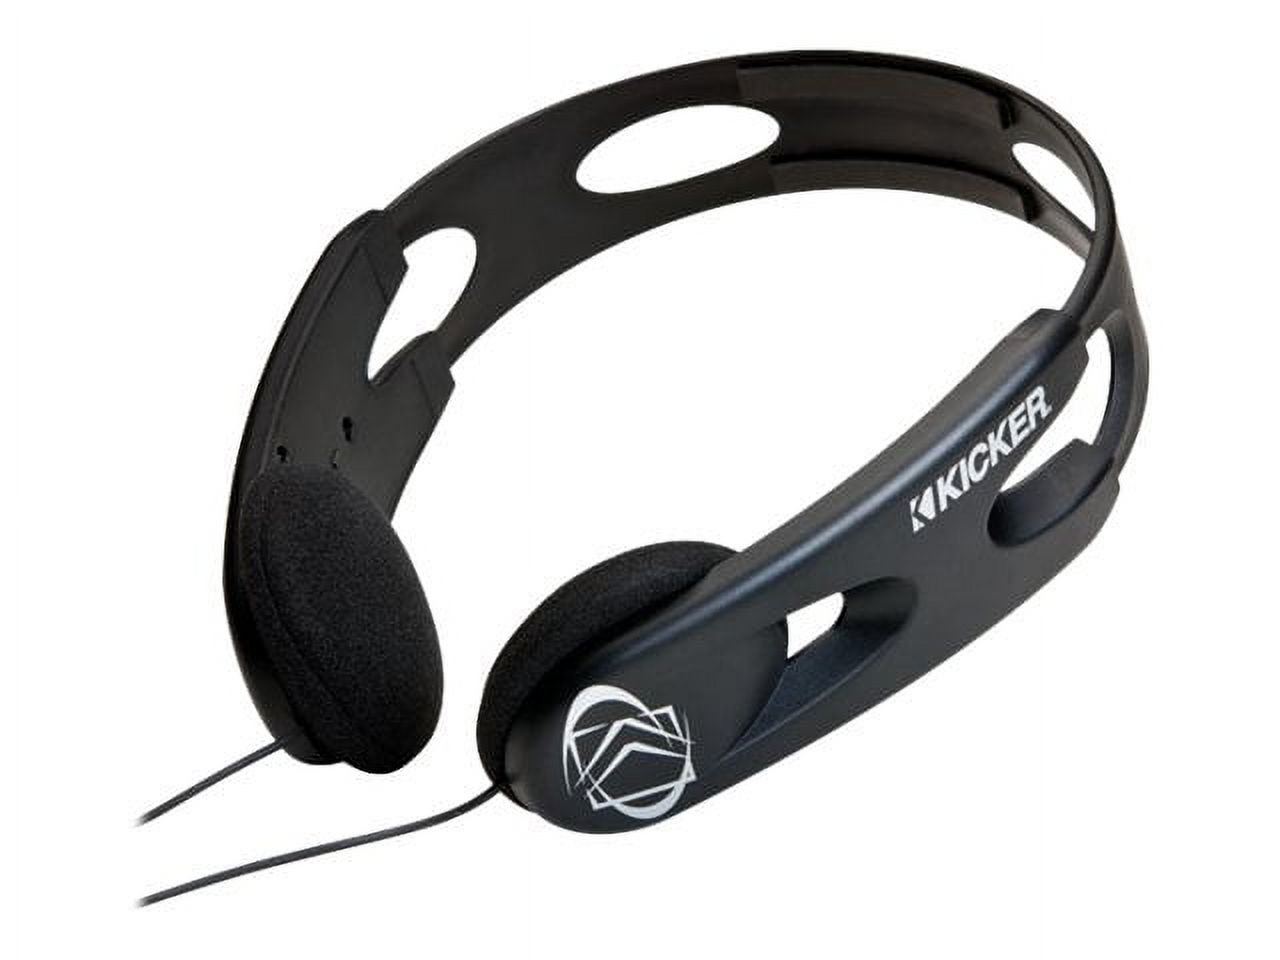 Kicker HP201 - Headphones - on-ear - wired - 3.5 mm jack - black - image 1 of 3